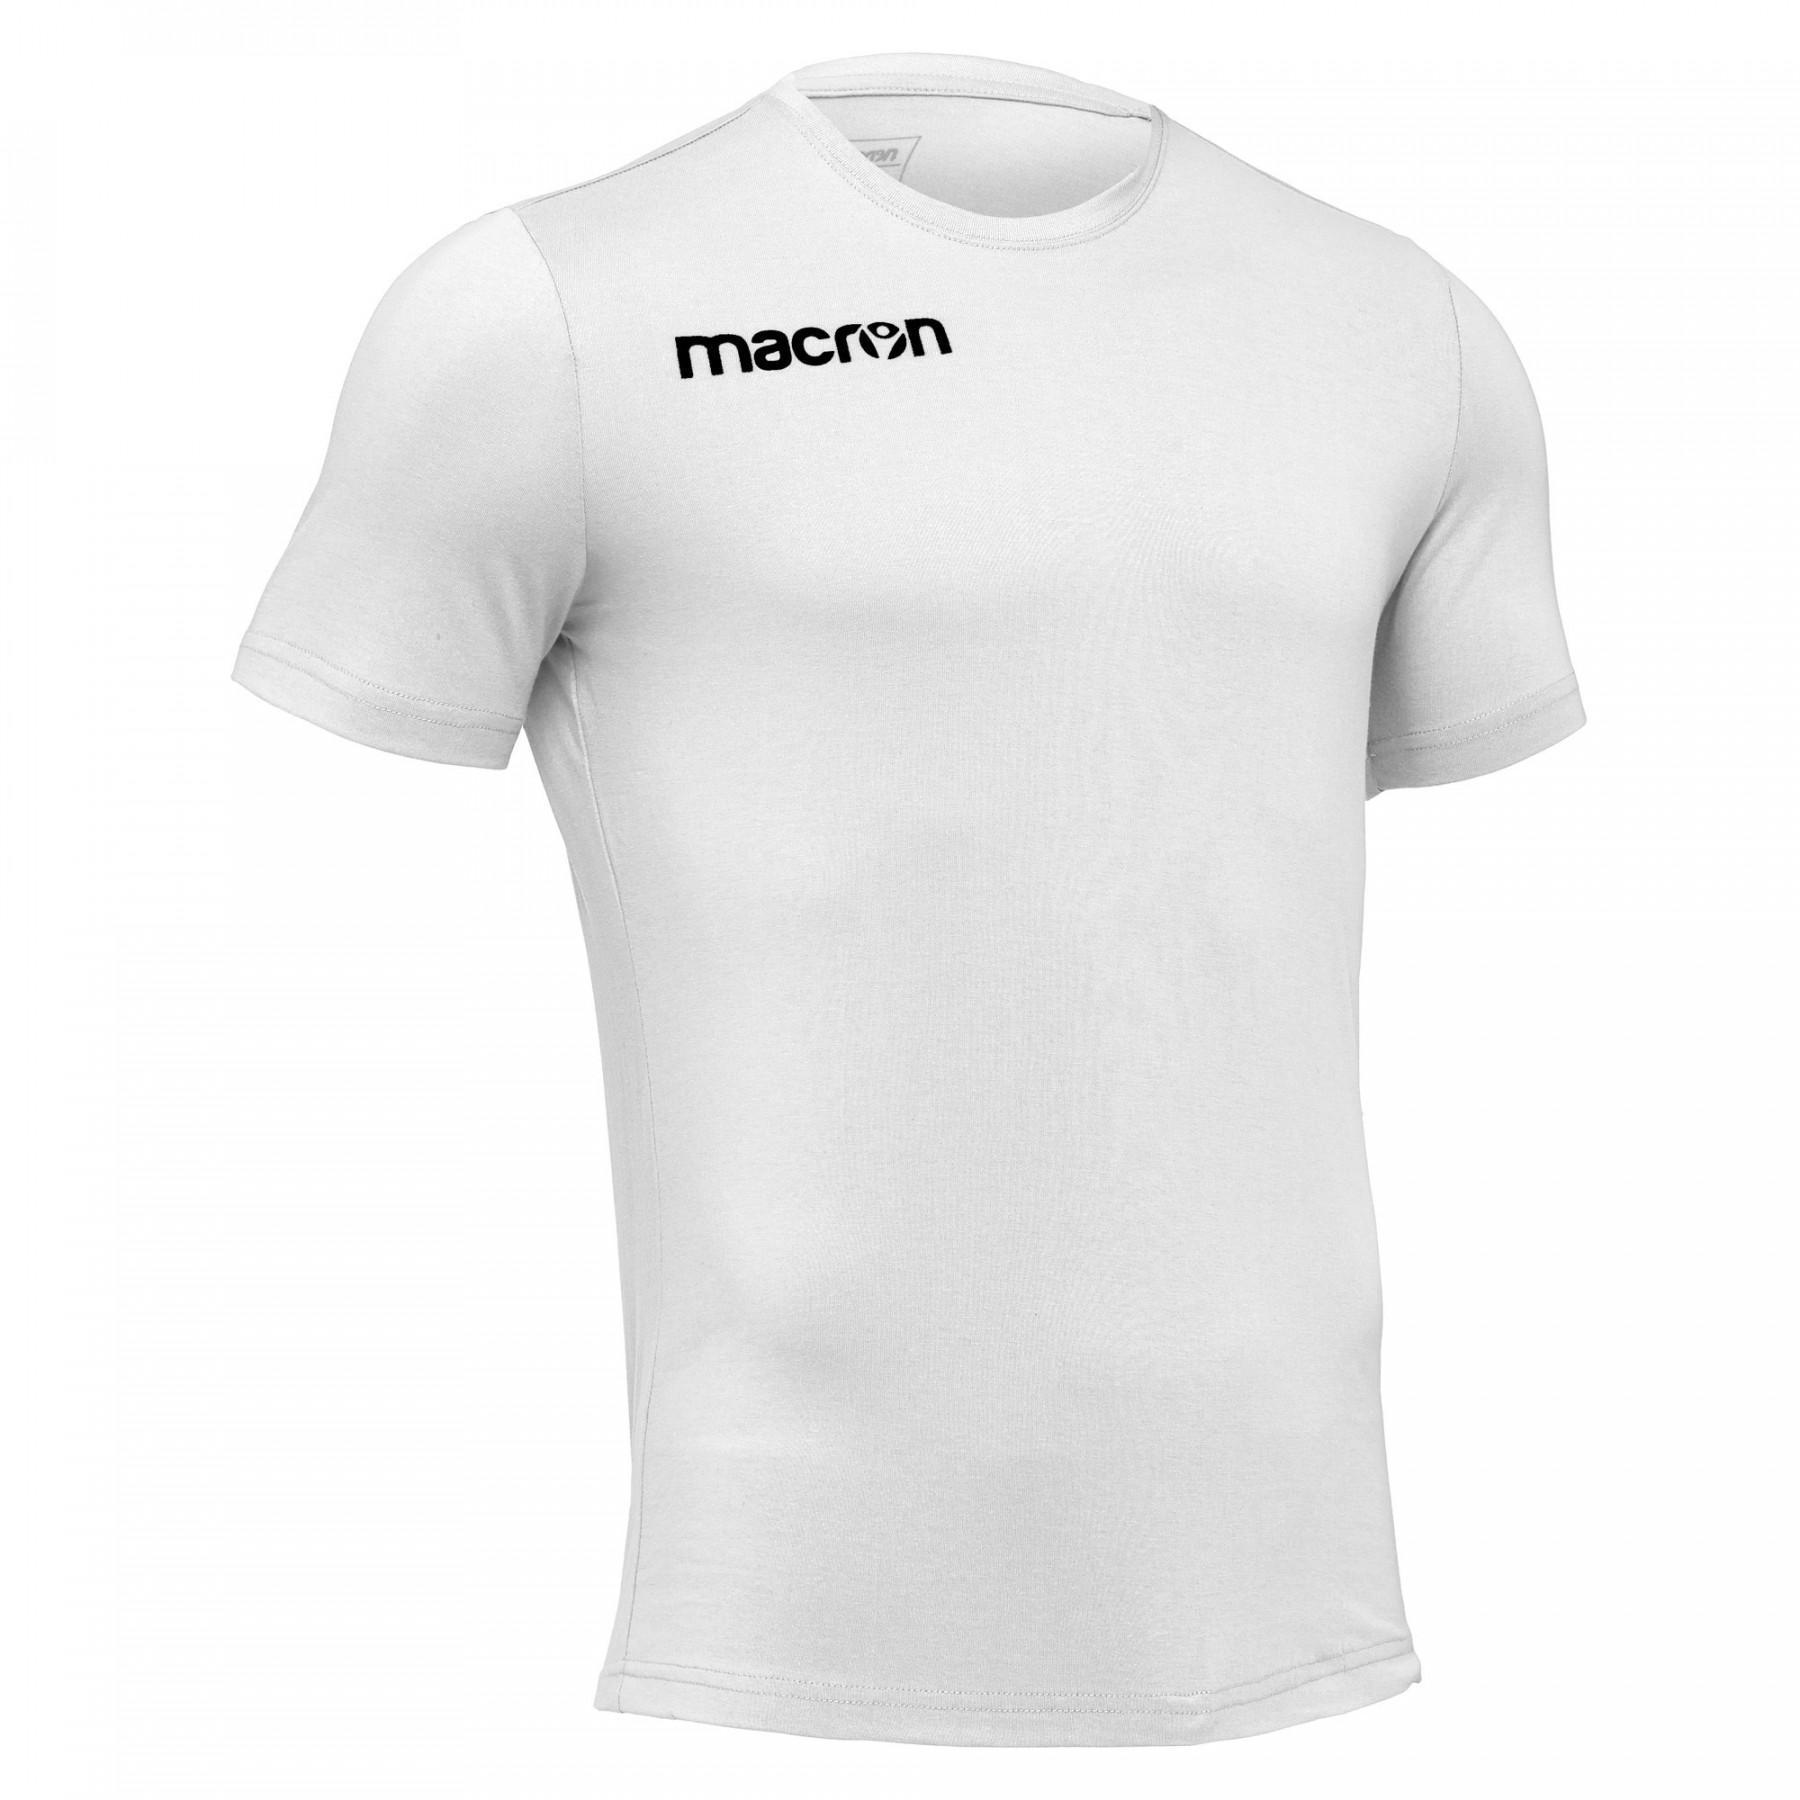 T-shirt Macron Boost - T-shirts & polo shirts - Men's wear - Handball wear